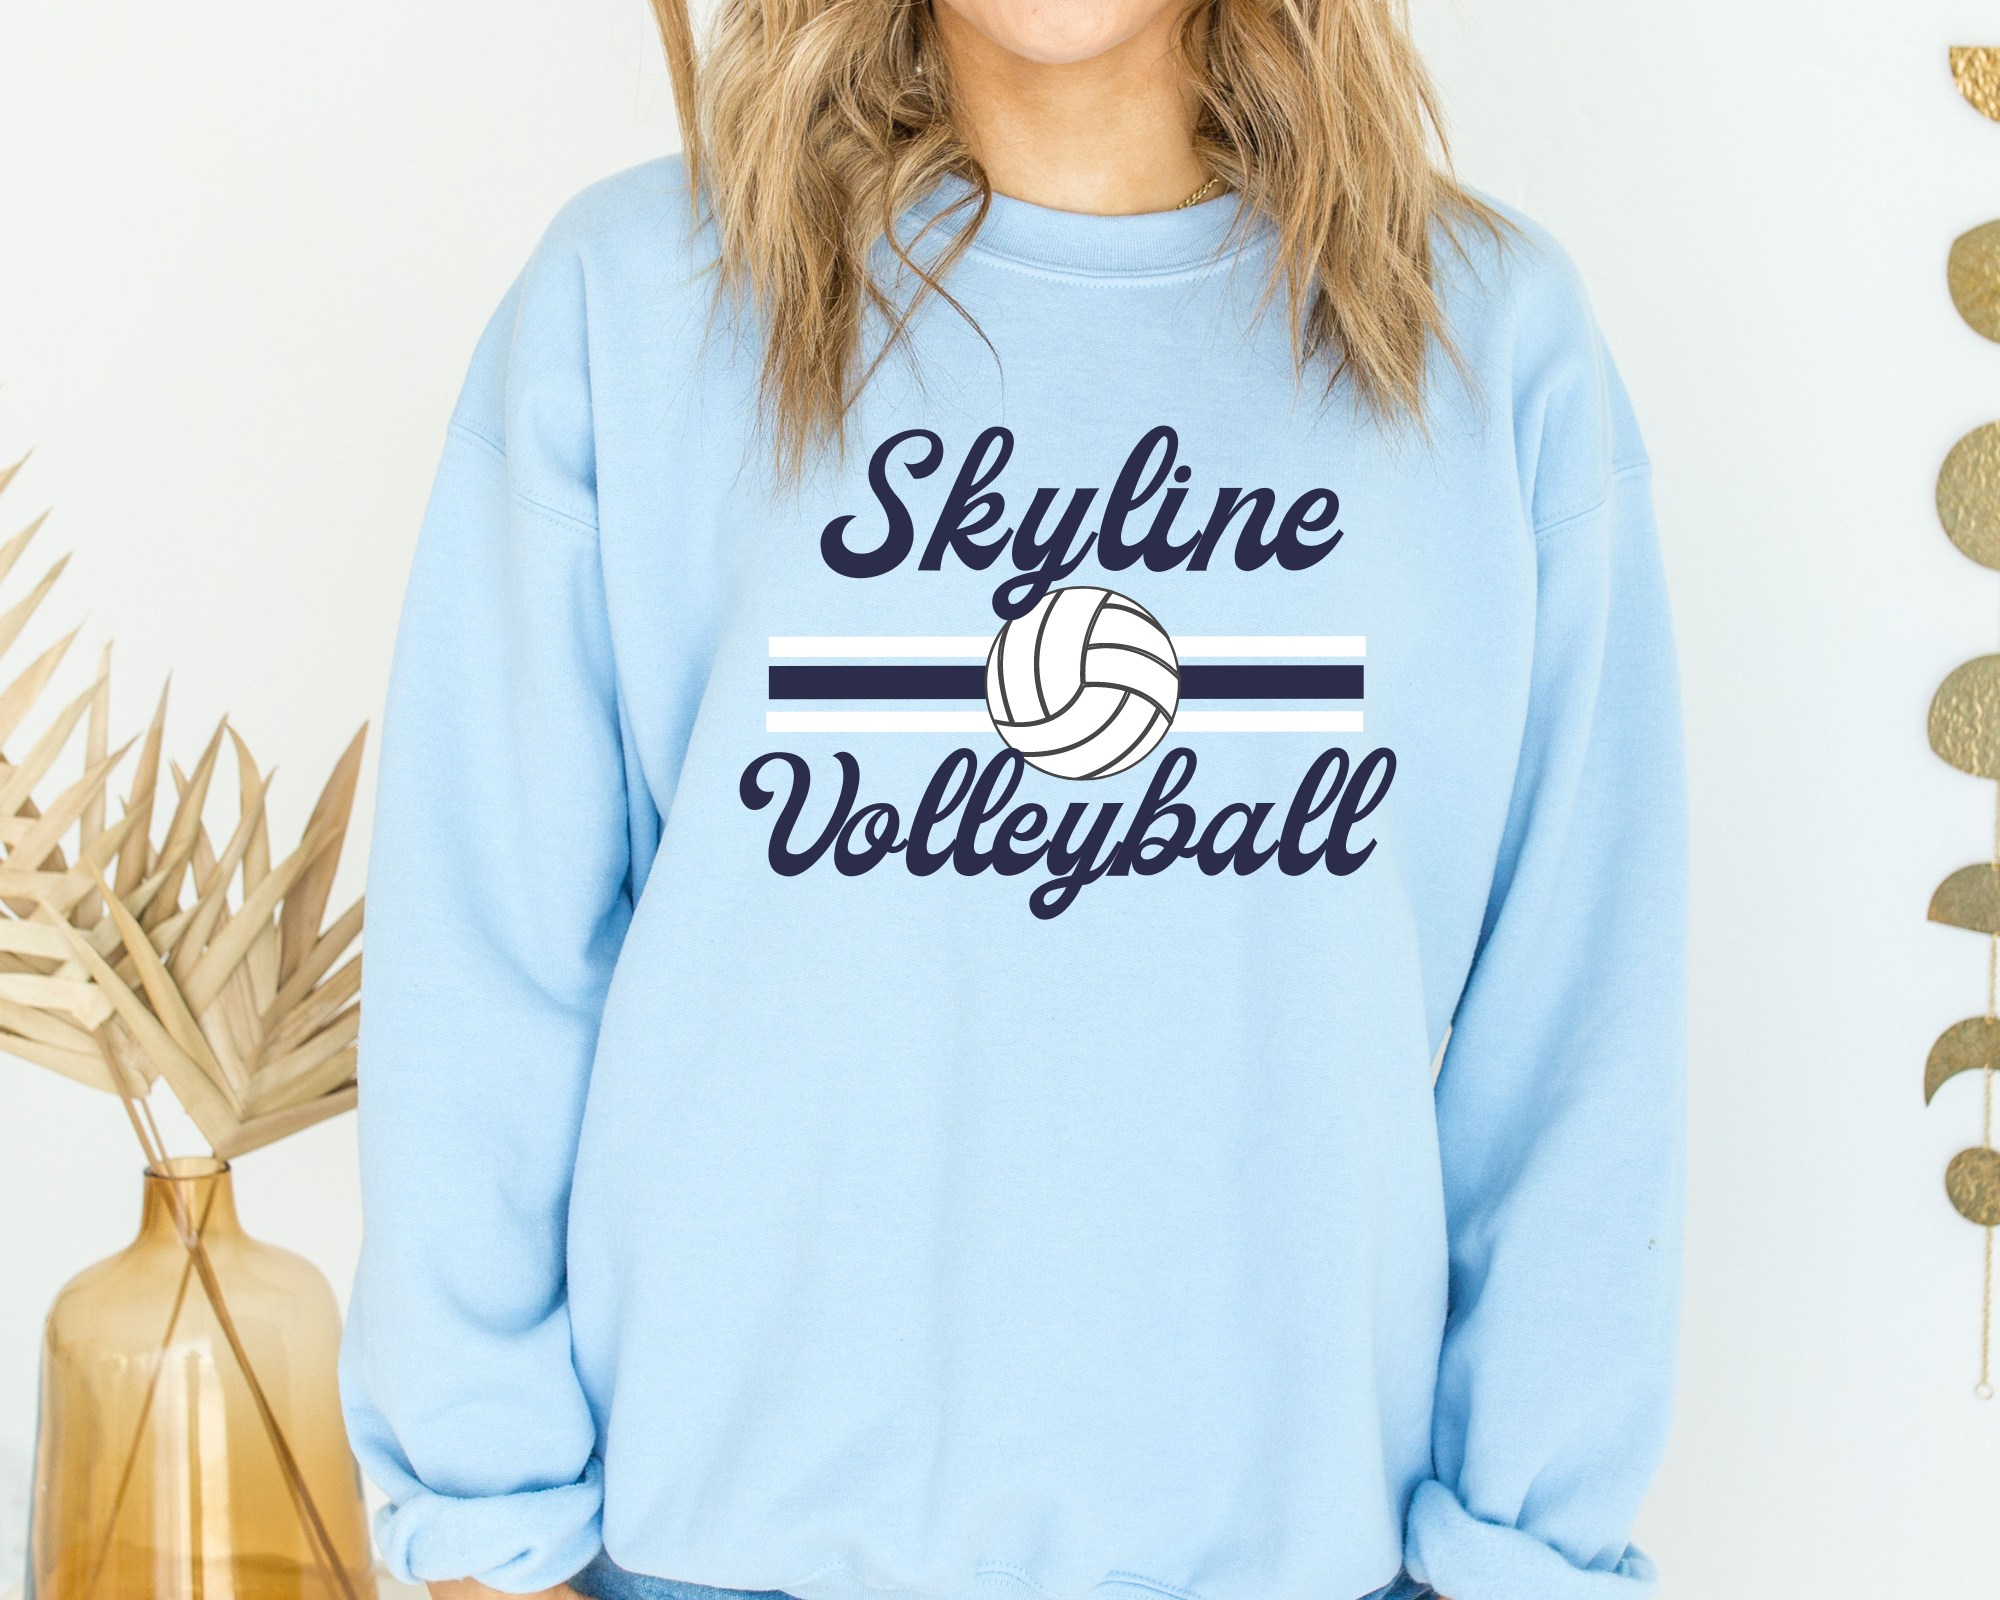 Retro Volleyball Sweatshirt